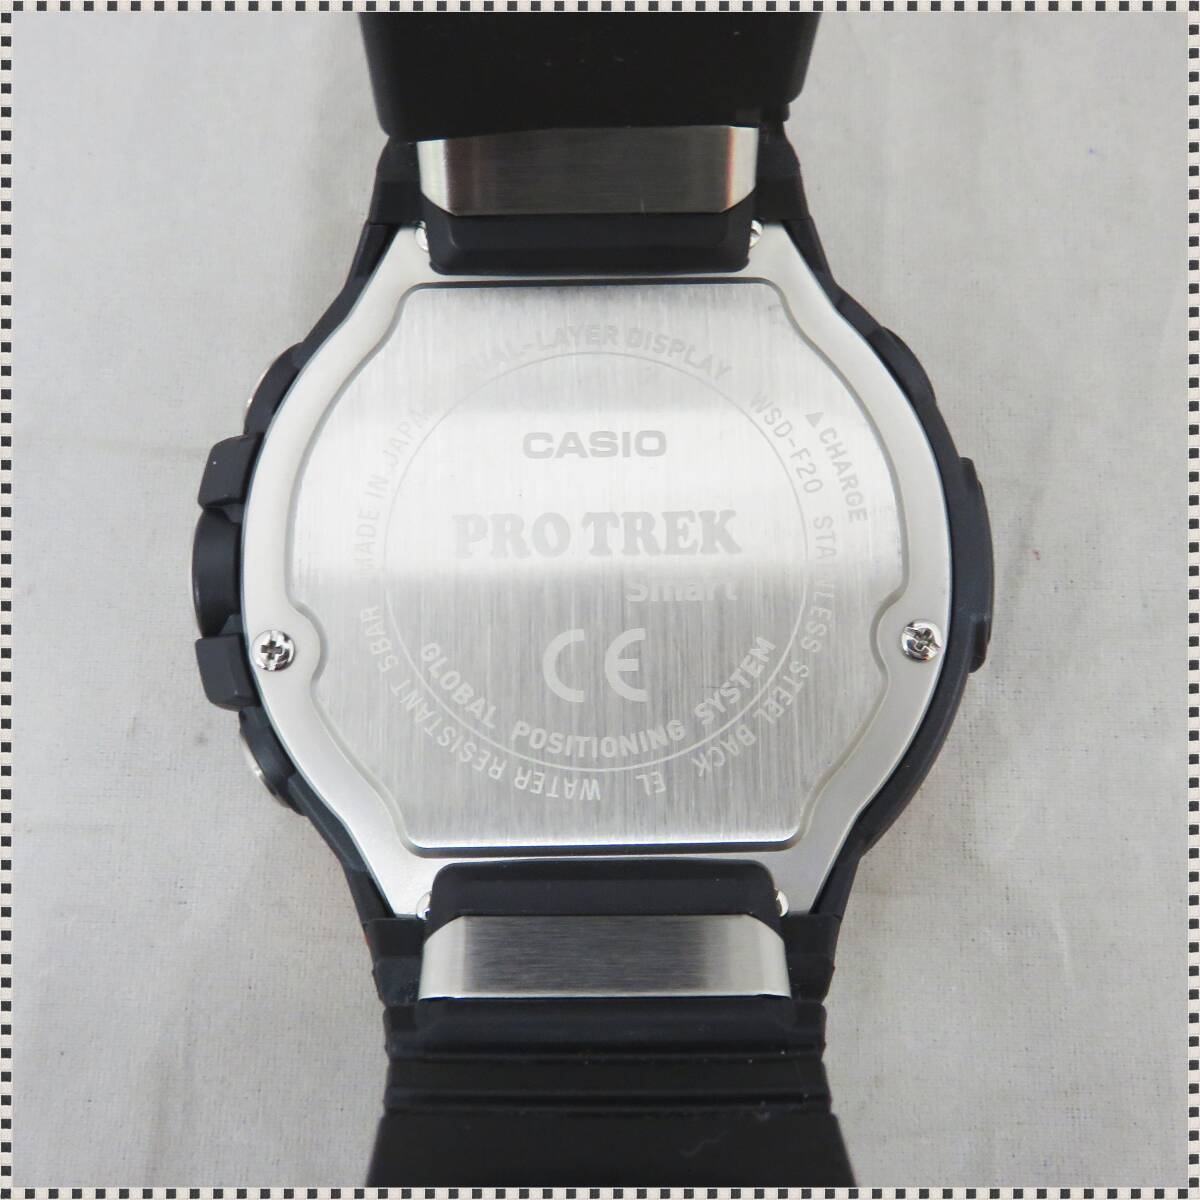 【 美品 】 カシオ PROTREK Smart WSD-F20 RG スマートアウトドアウォッチ GPS搭載 動作確認済 付属品完備 CASIO HA041512_画像6